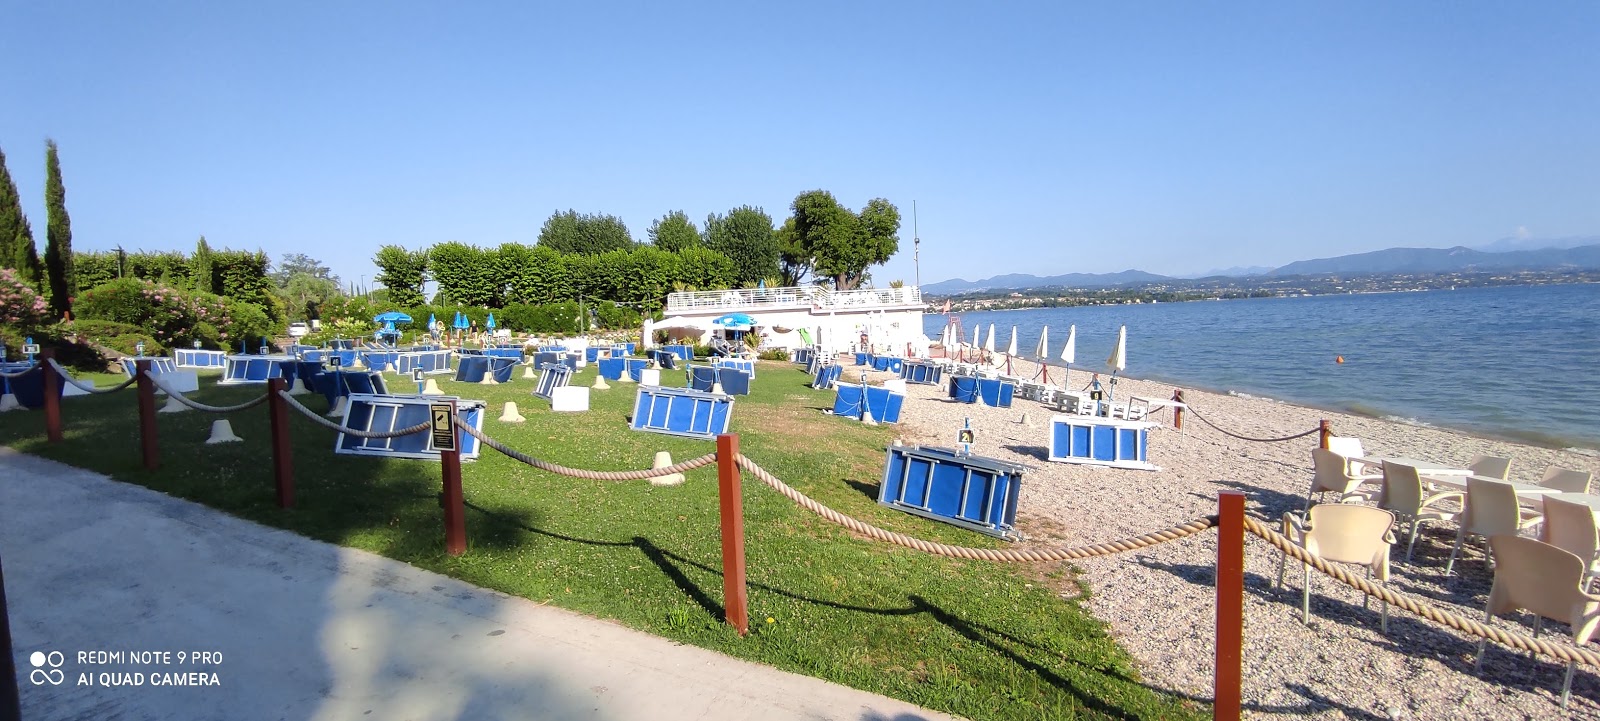 Photo de Spiaggia Cala de Or avec plage spacieuse